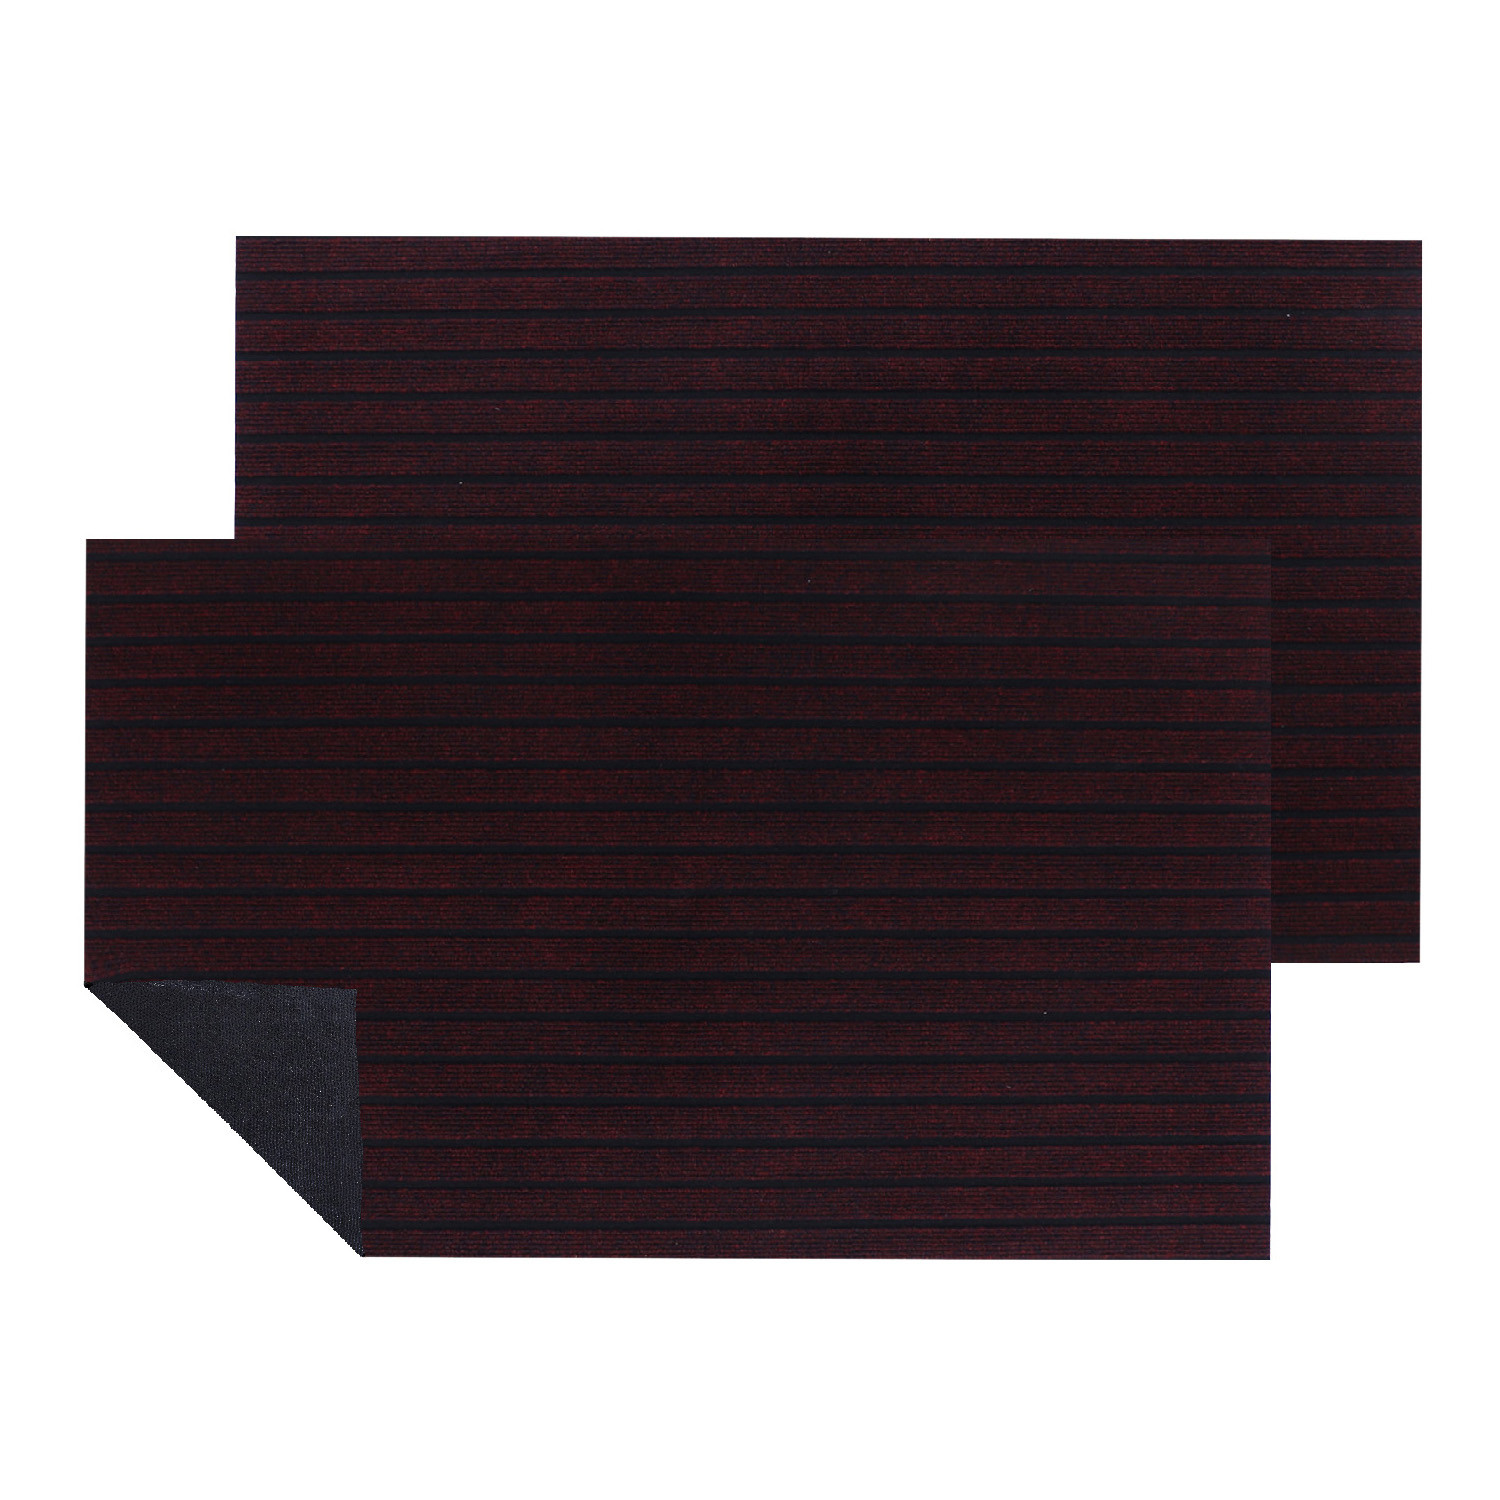 Kuber Industries Microfiber Striped Design Anti-Skid & Water Absorbent Door Mat For Indoor & Outdoor,16